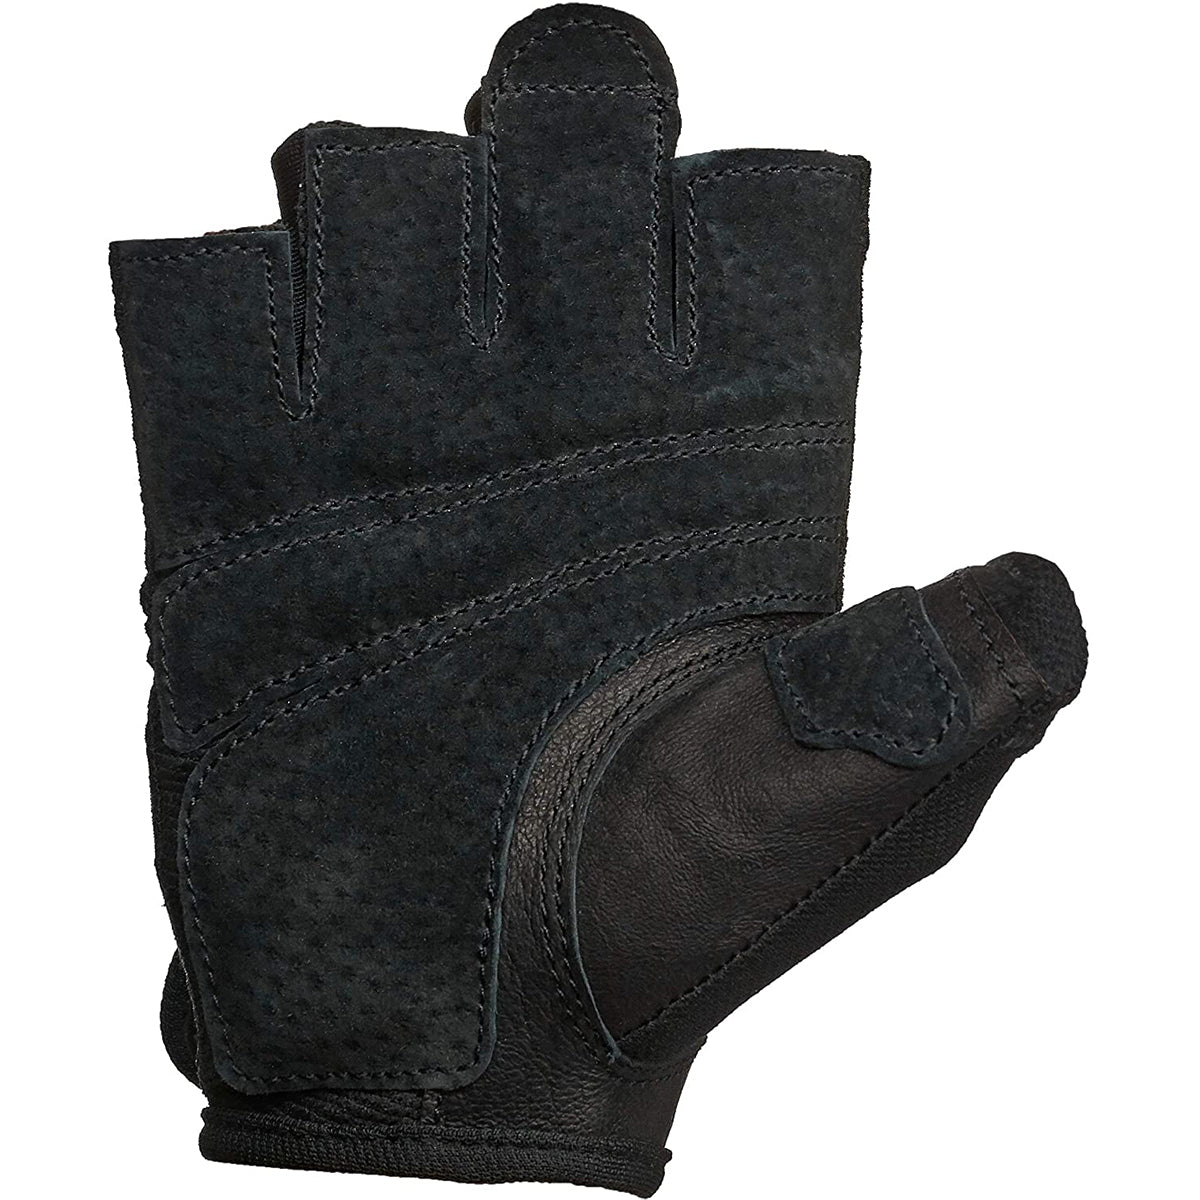 Harbinger 161 Women's Power Weight Lifting Gloves - Black Harbinger